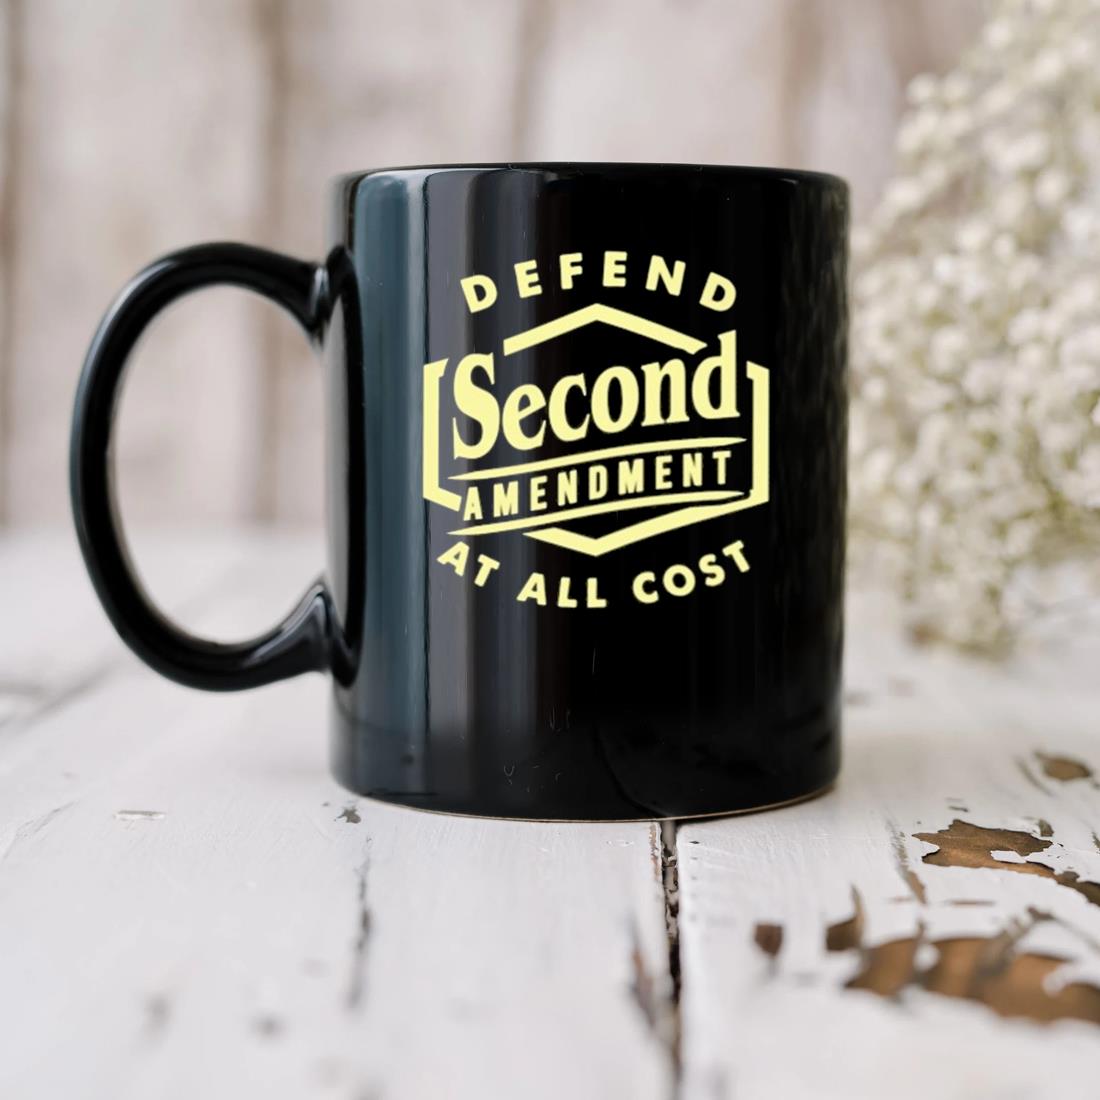 Defend Second Amendment At All Cost Mug